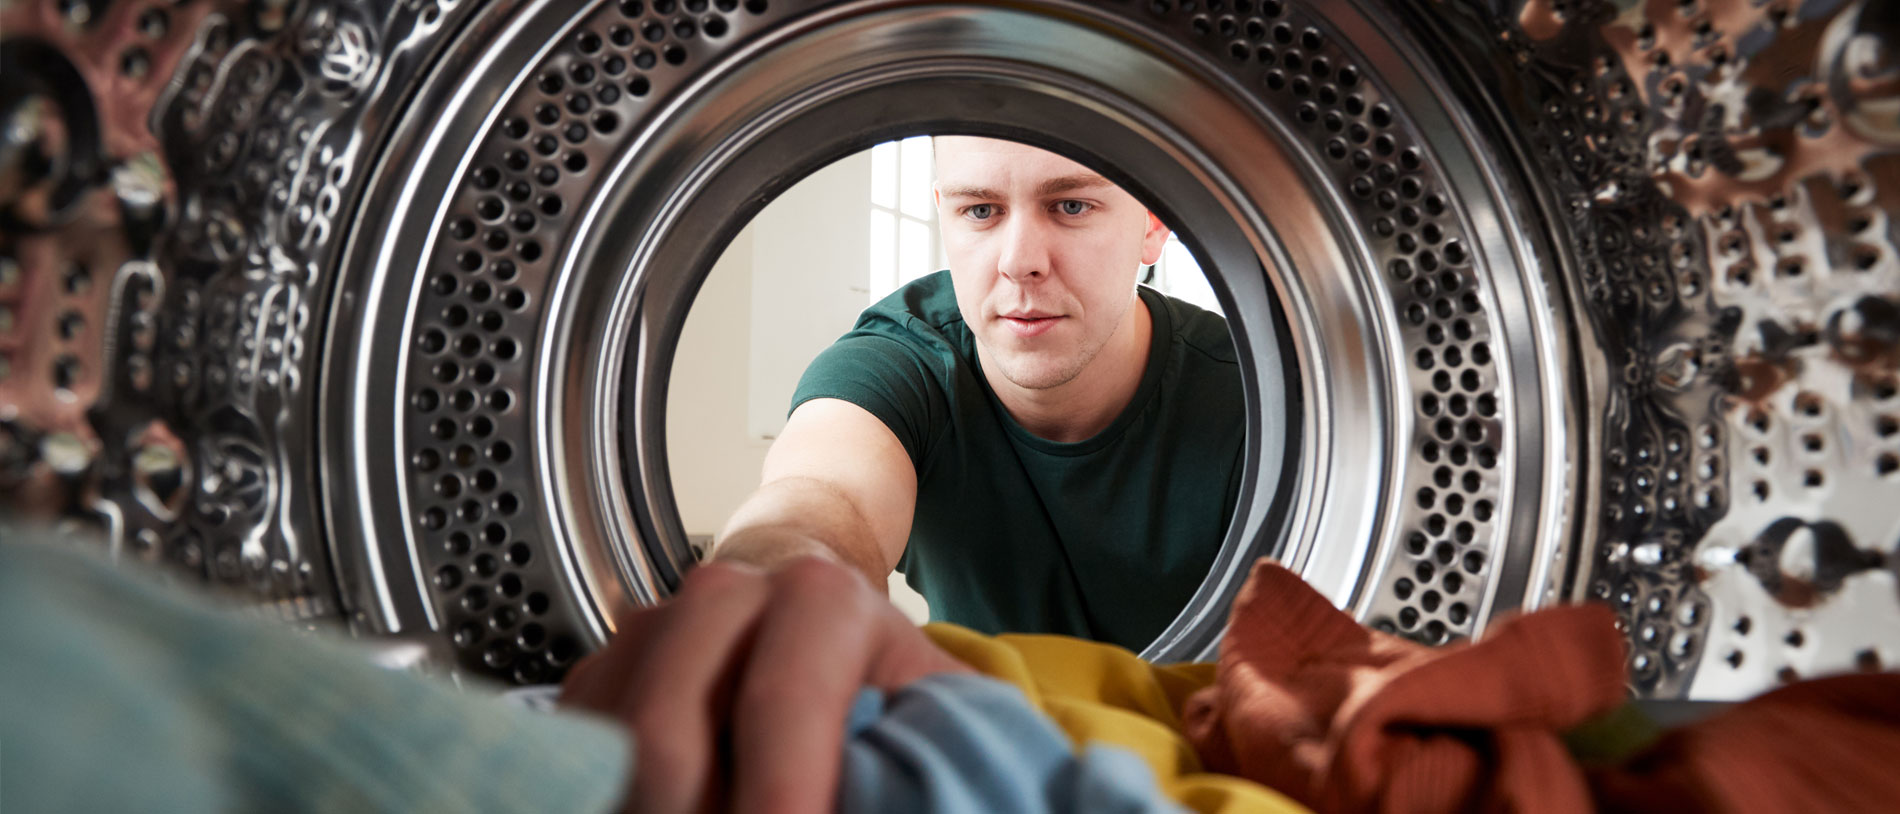 Perspektive aus dem Inneren der Wäschetrommel einer Waschmaschine: Mann greift in die Wäsche